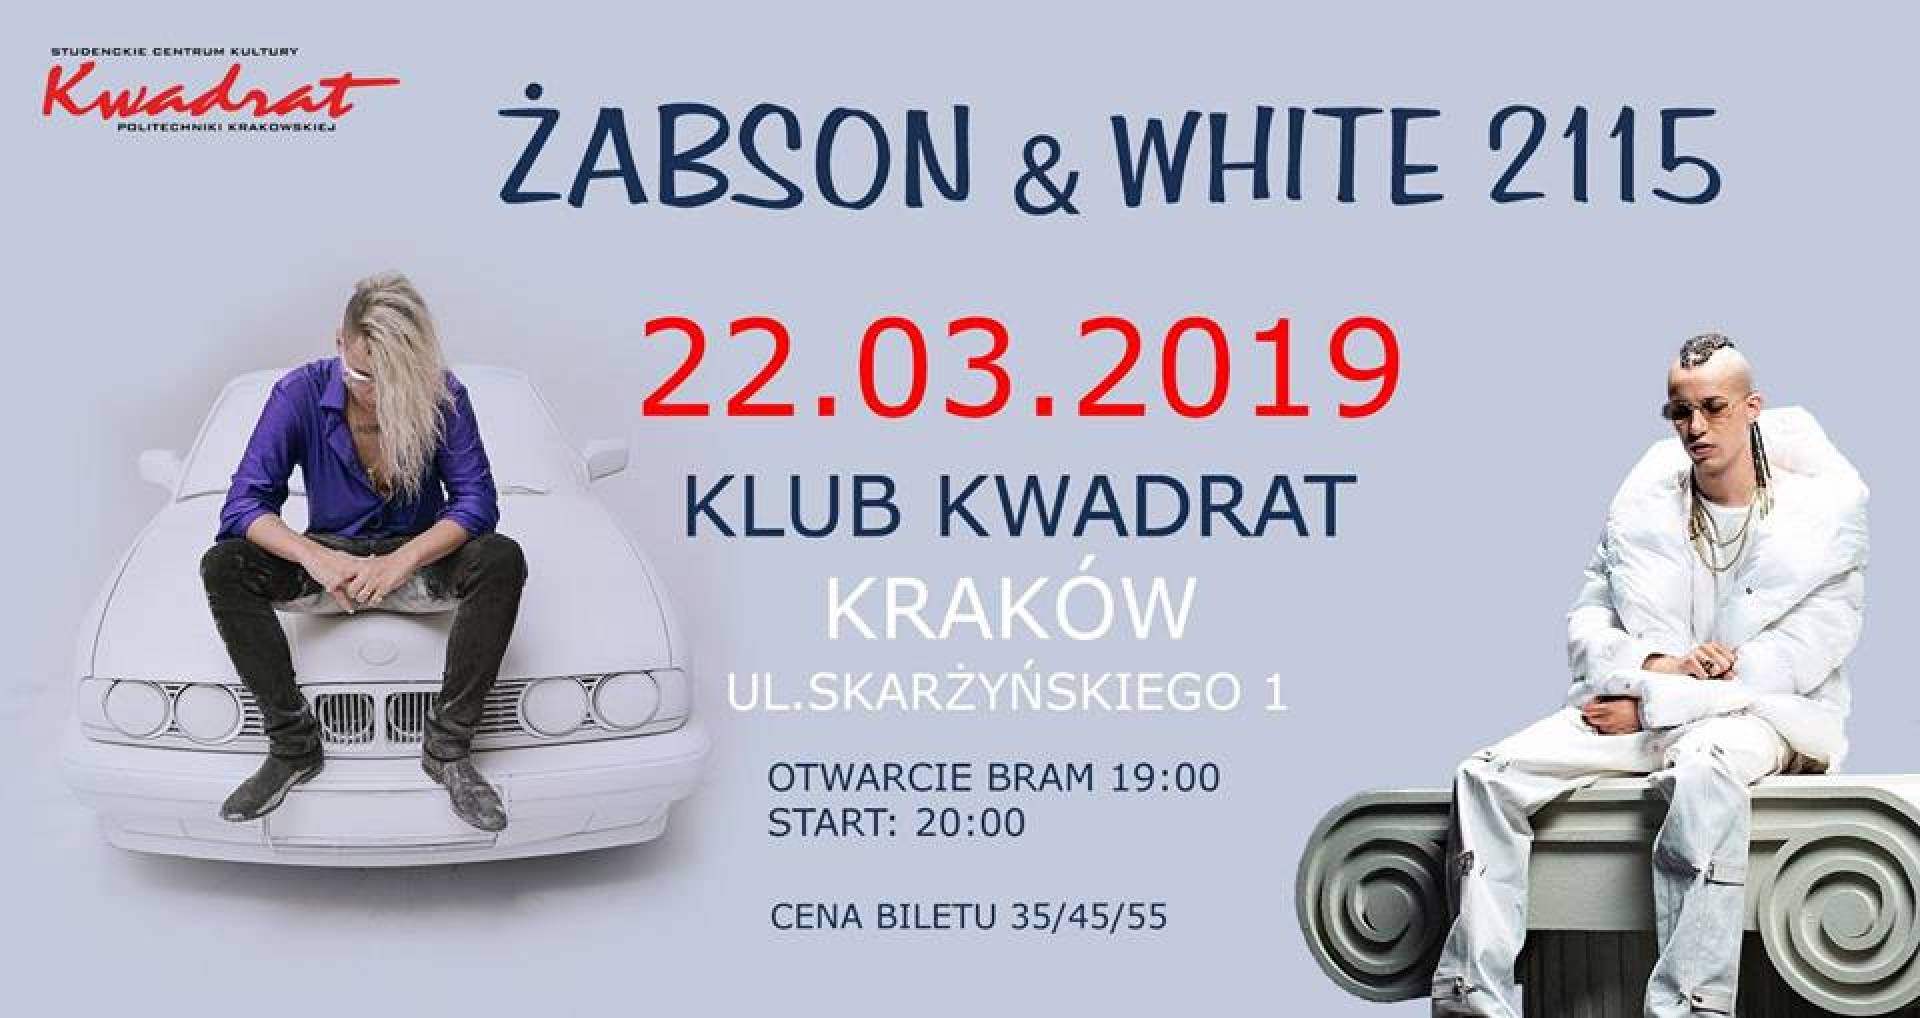 Żabson & WHITE 2115